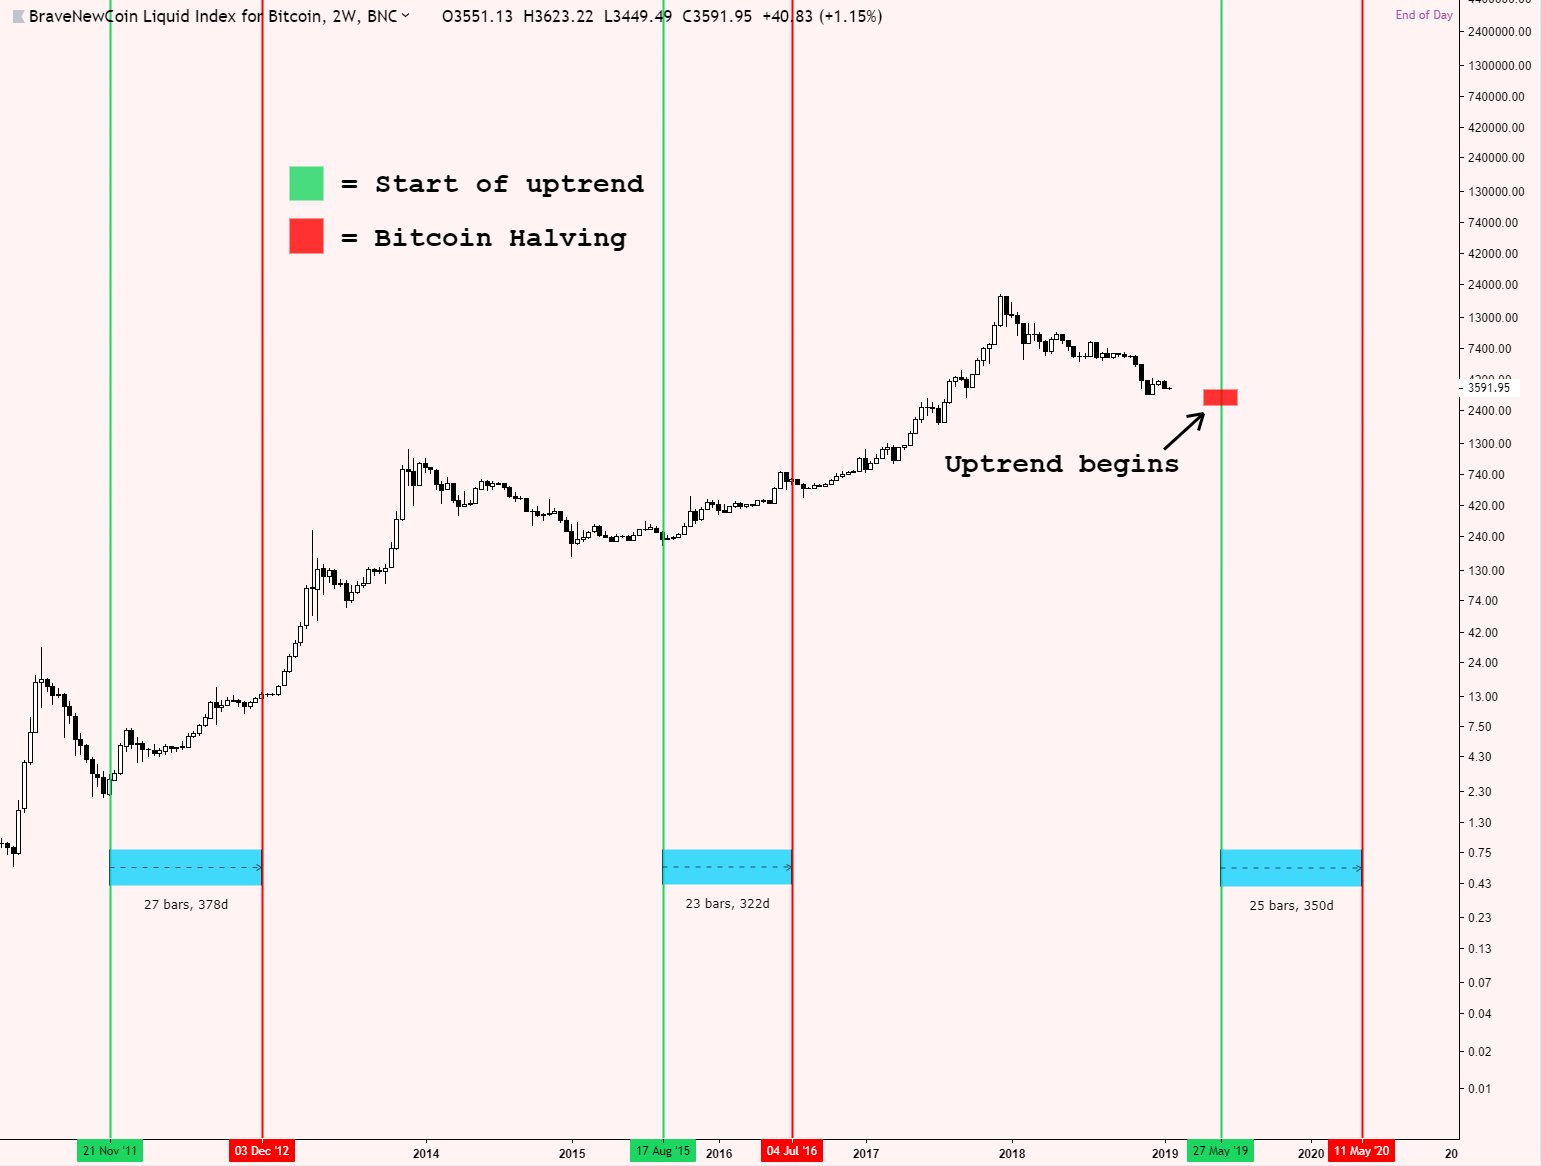  bitcoin 2019 price prices crypto high come 